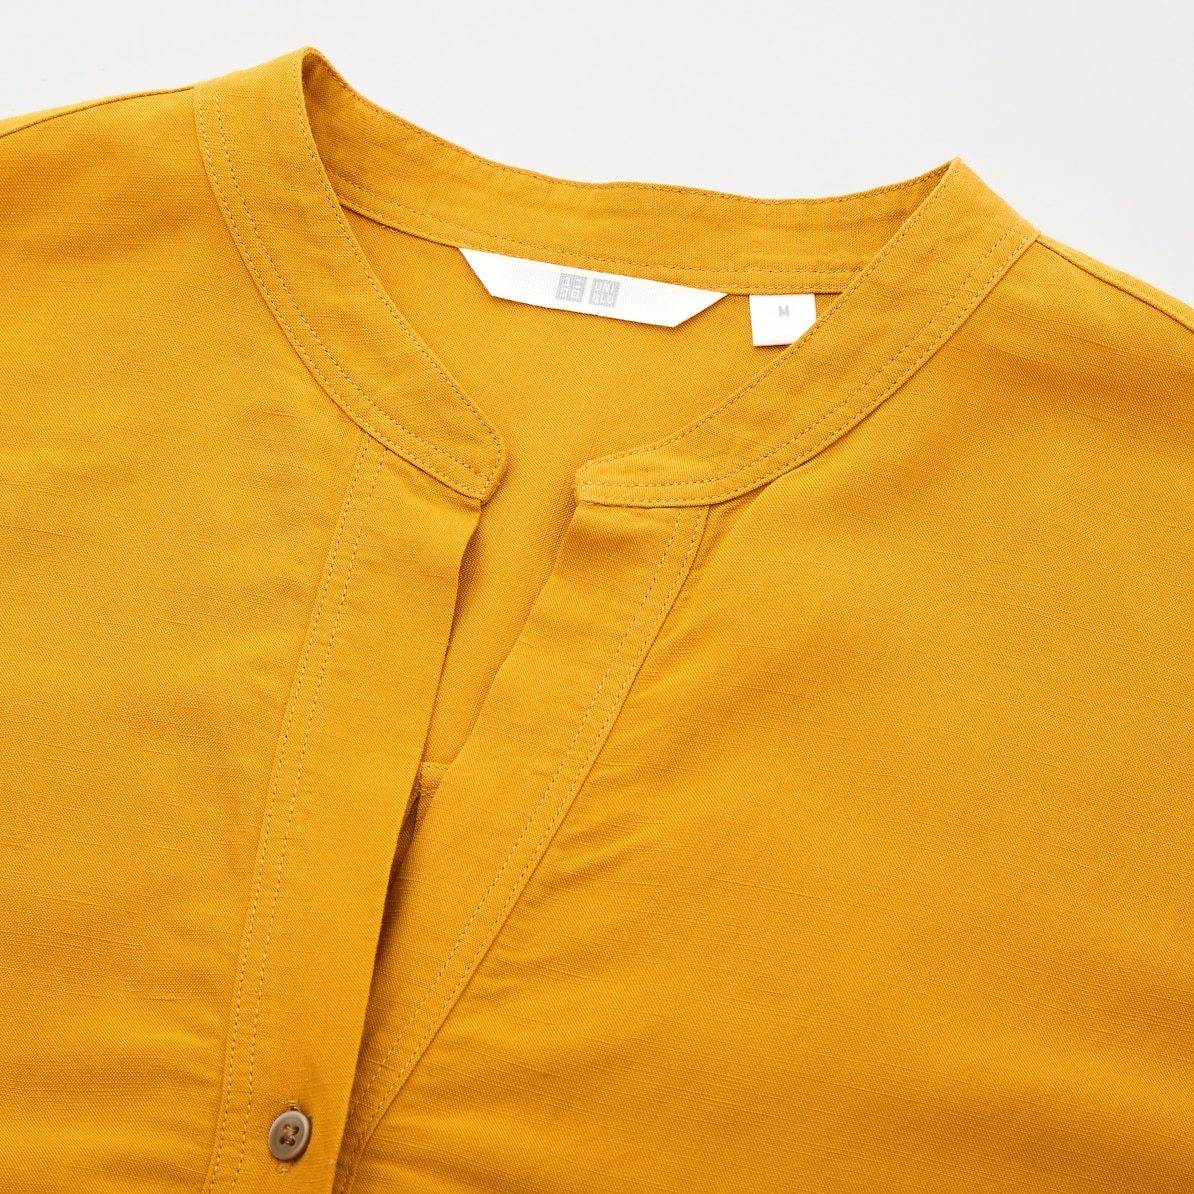 【お値下げ】新品タグ付き ユニクロ UNIQLO リネンブレンドスキッパーシャツ 7分袖 抜け感のある着こなし ナチュラルな風合い M ベージュ _お色違い画像です。仕様のみご参照下さい。